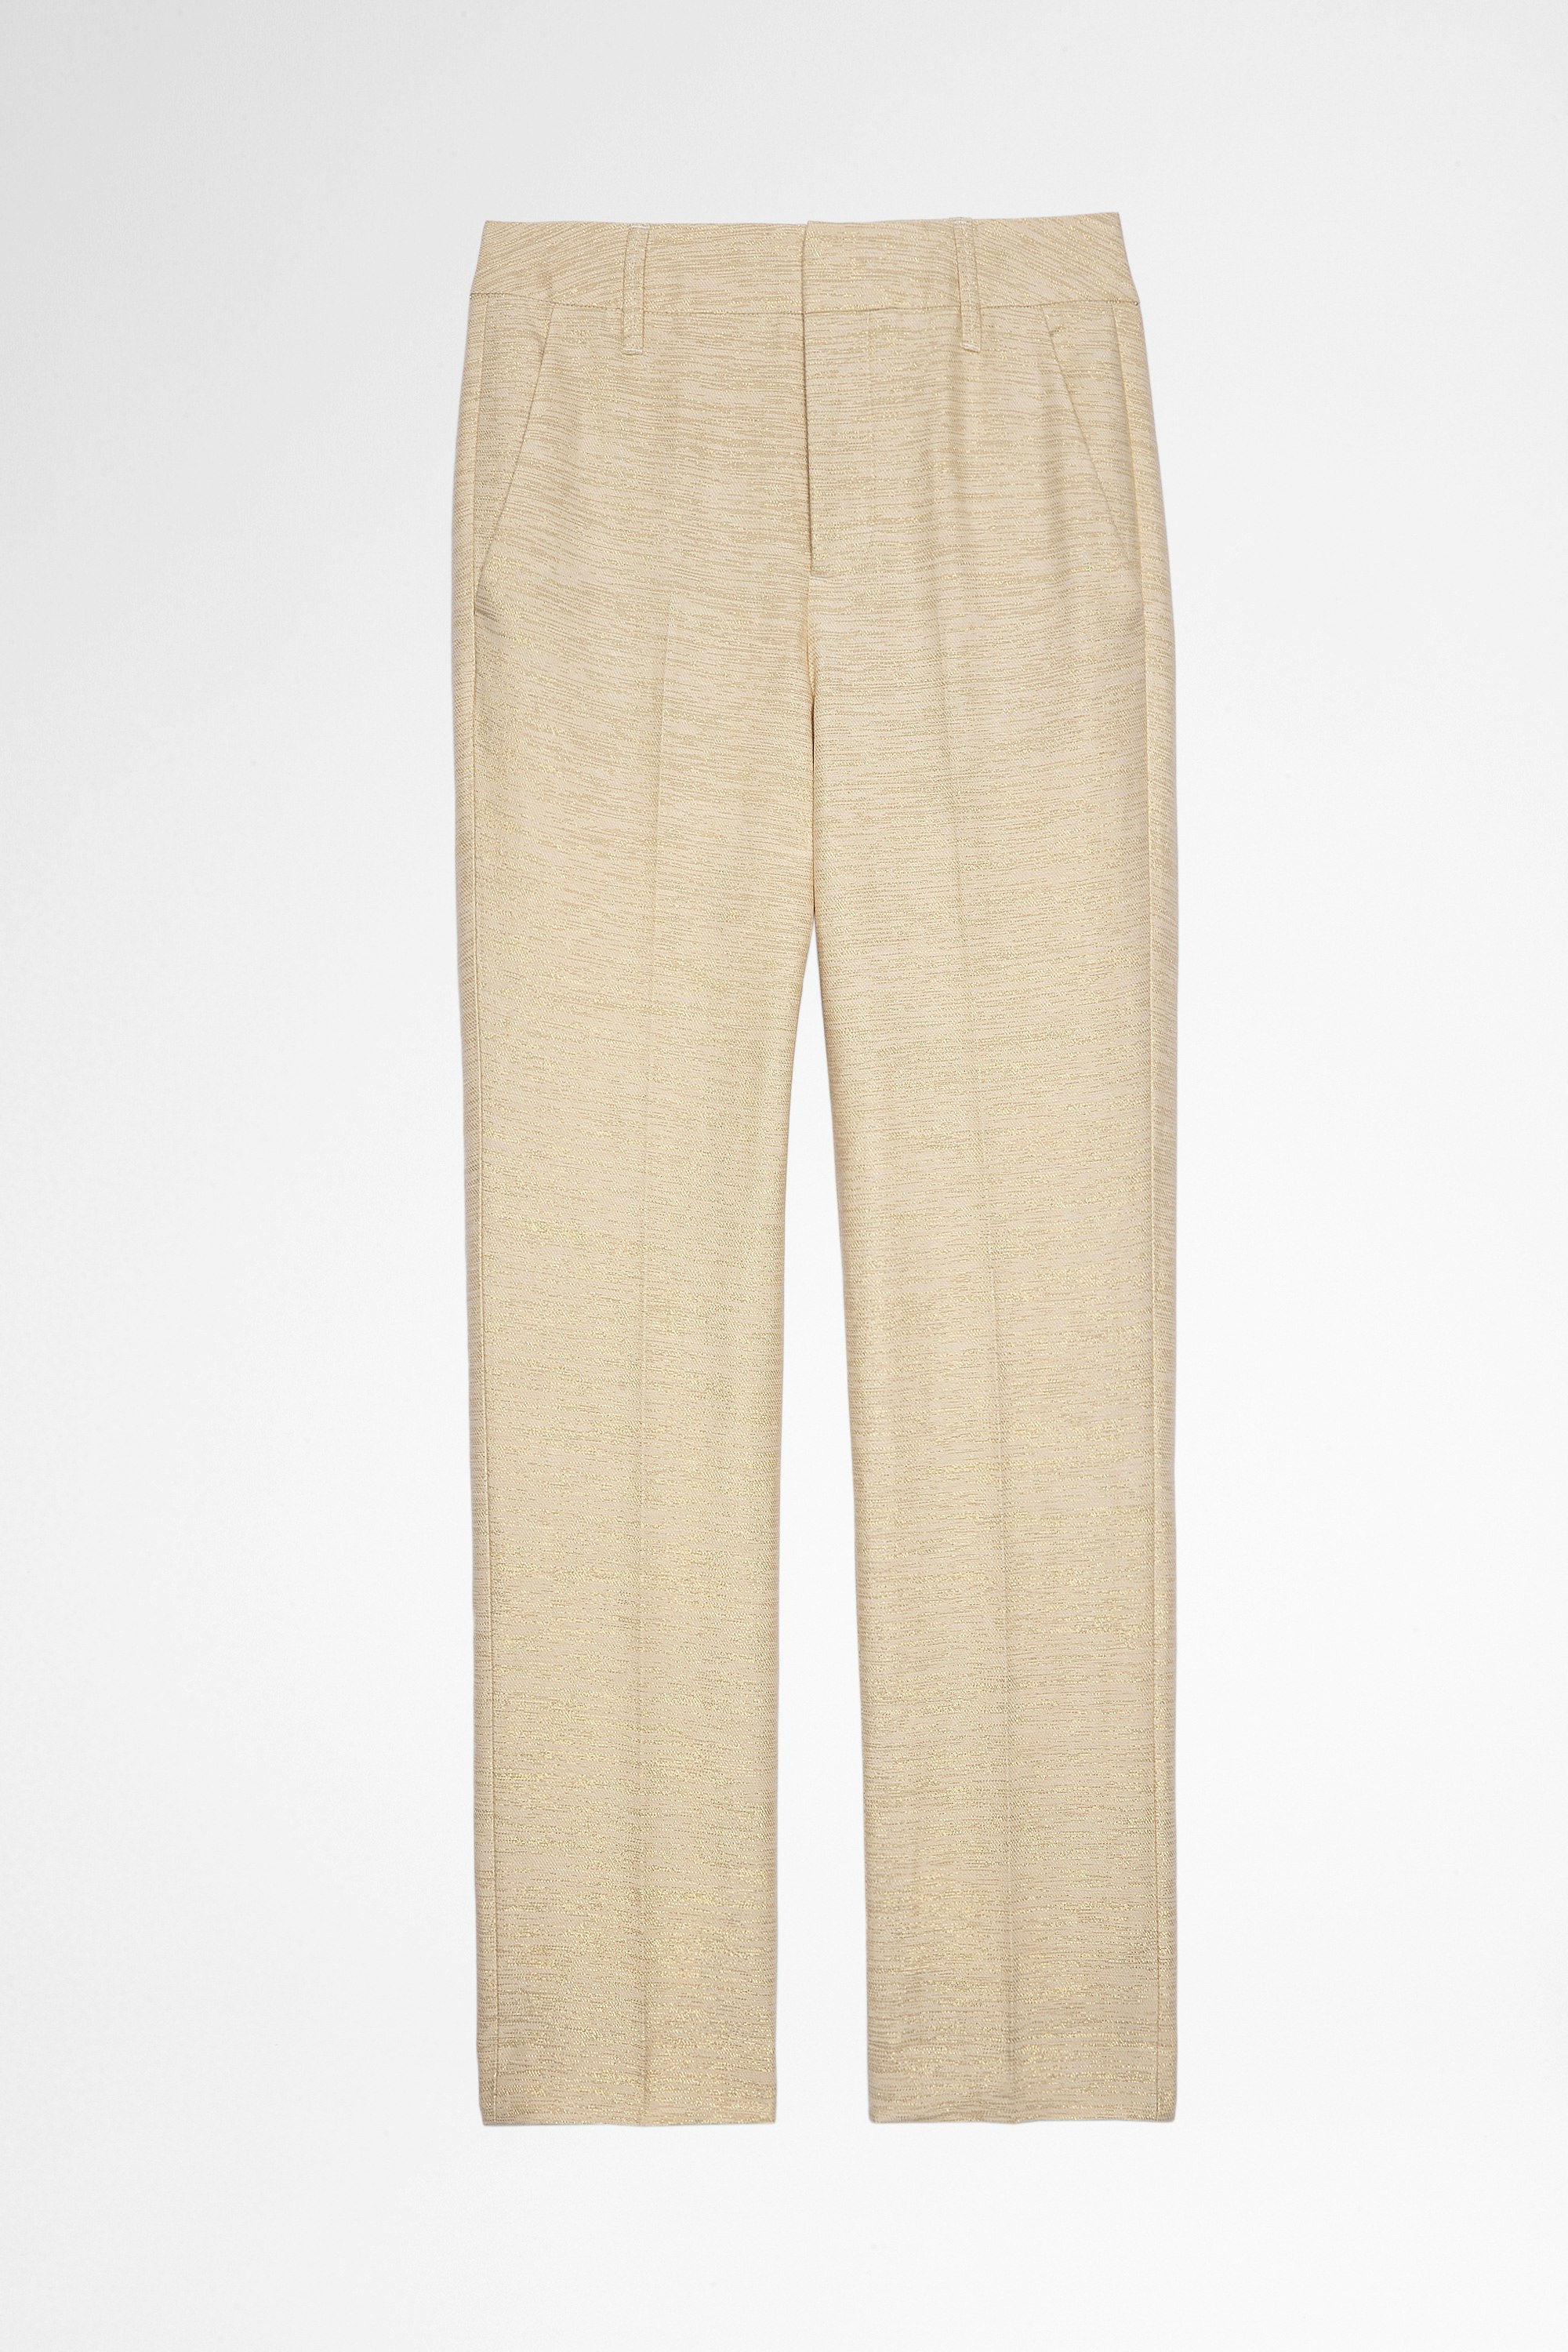 Hose Posh Hose aus Leinen in Beige mit metallisierten, goldfarbenen Fasern für Damen